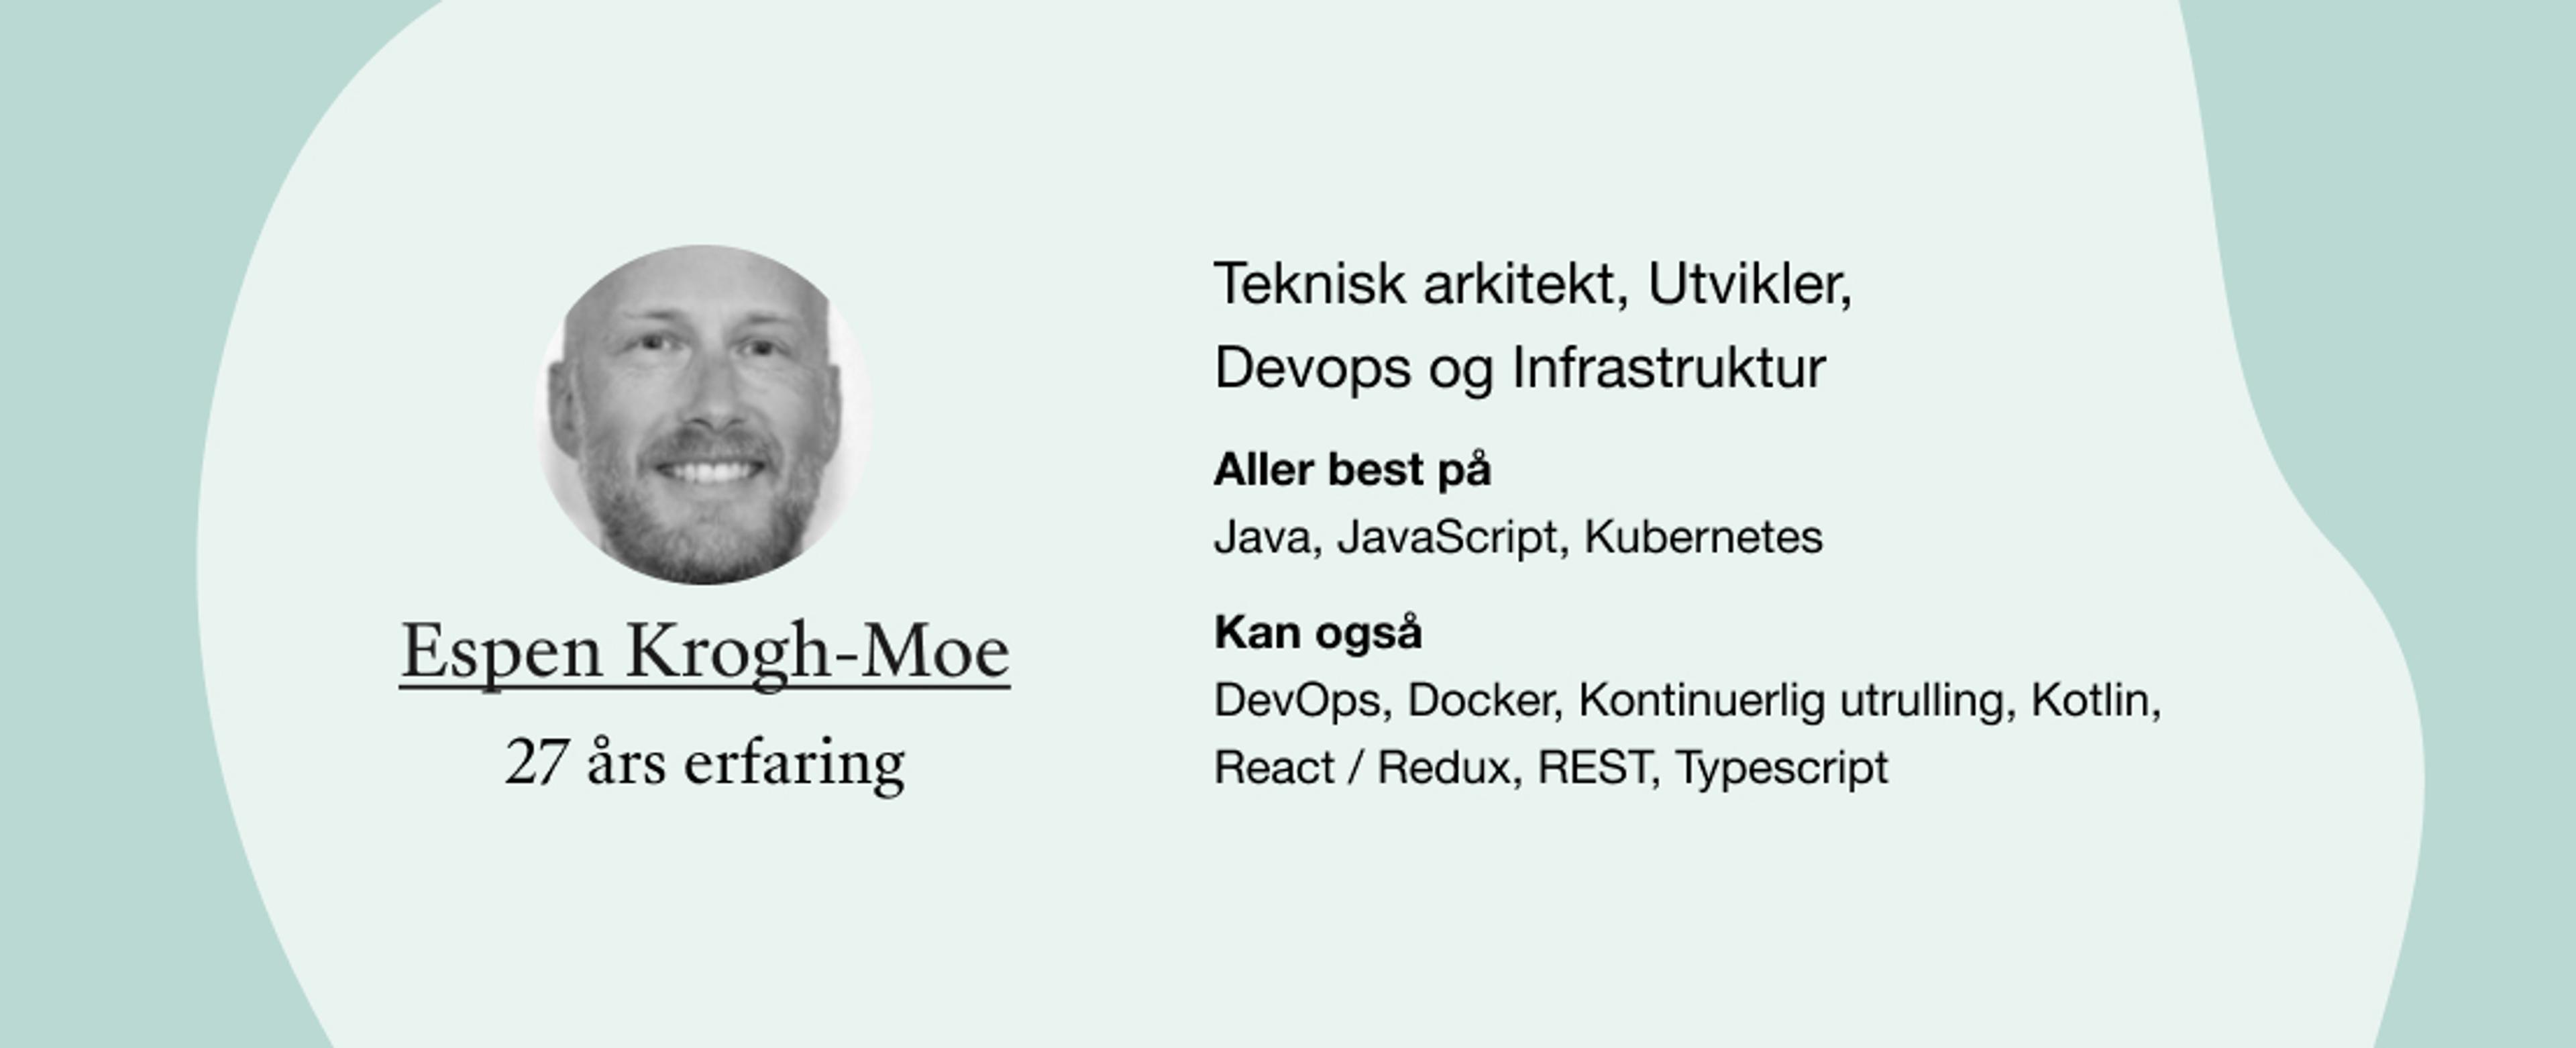 Espen Krogh-Moe. Roller: Teknisk arkitekt, Utvikler, Devops og DevOps, Docker, Kontinuerlig utrulling, Kotlin, React / Redux, REST, Typescript Infrastruktur. Kompetanser: Java, JavaScript, Kubernetes, 